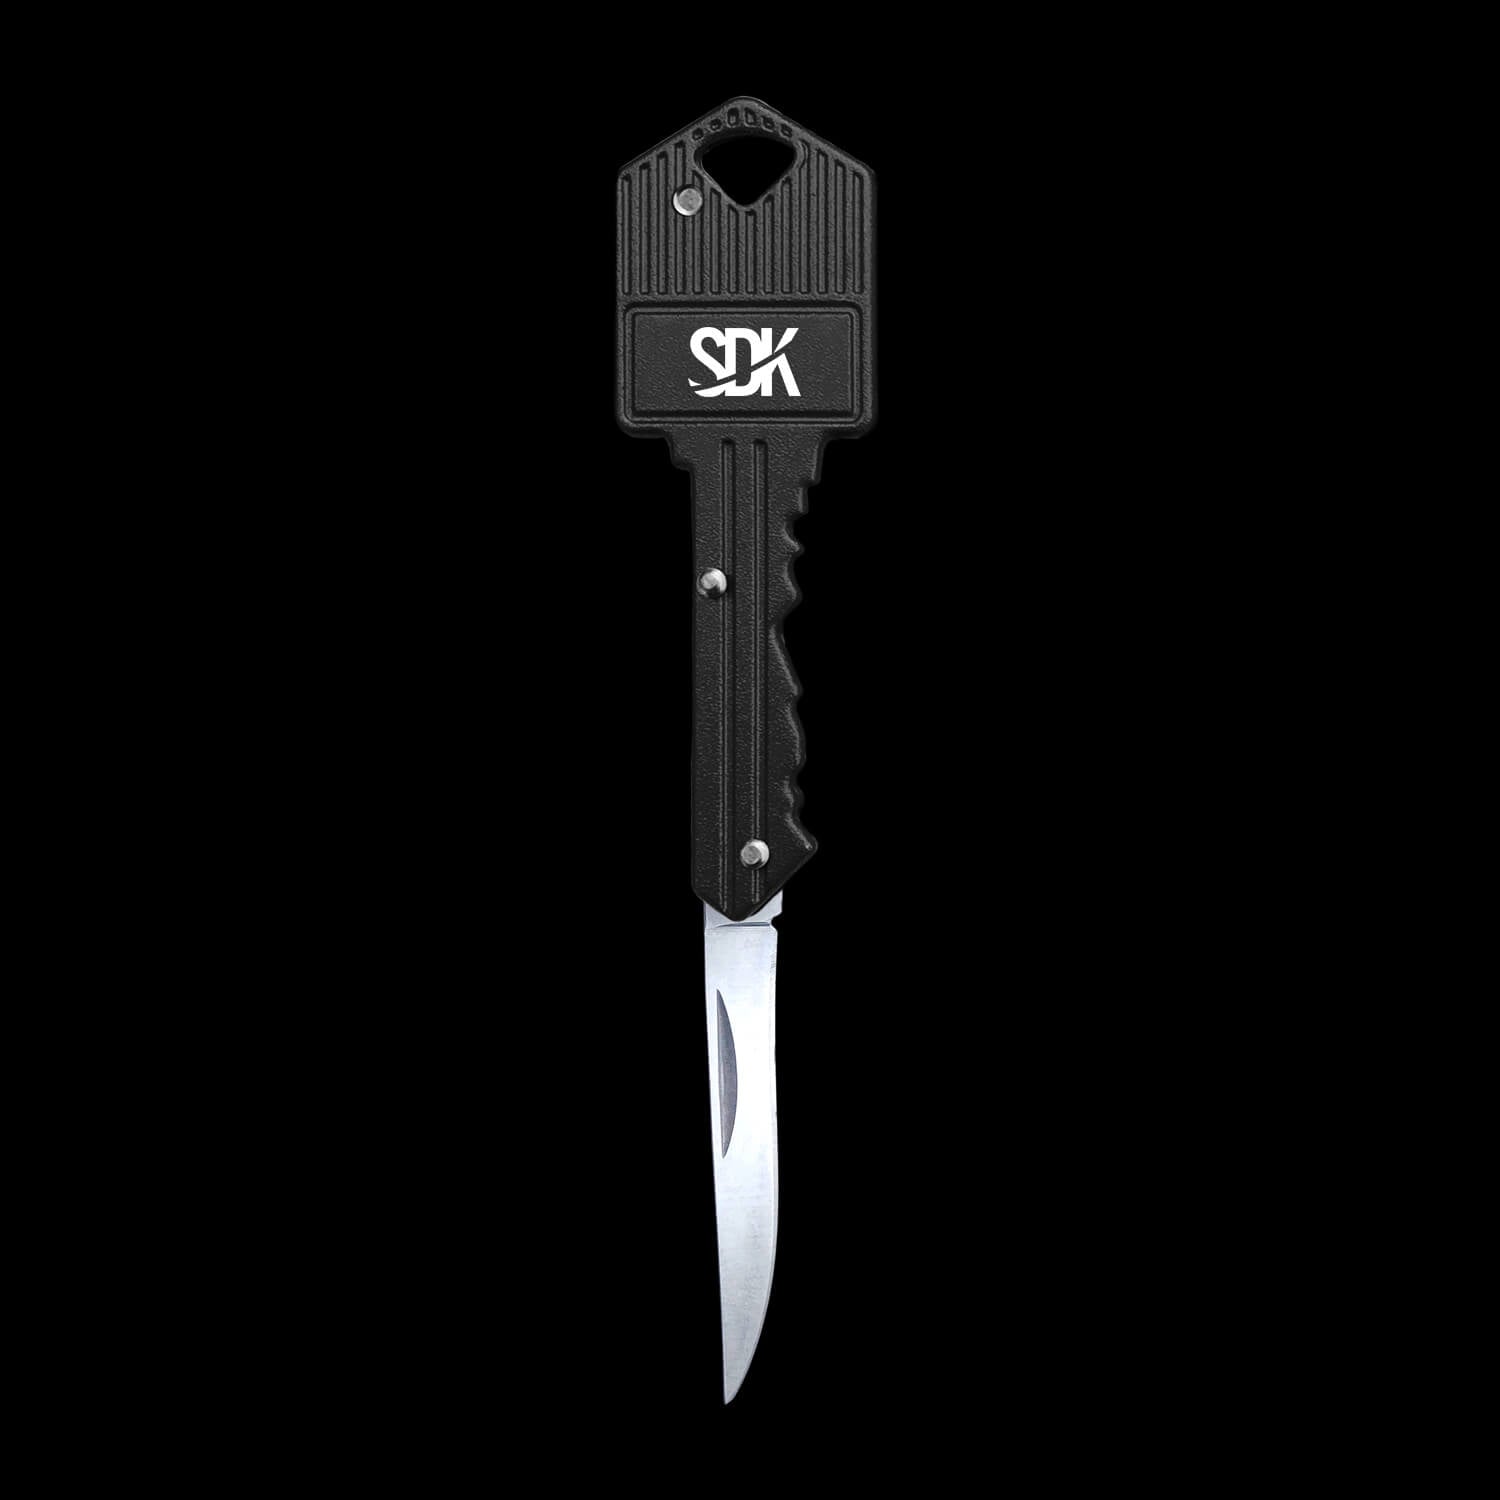 SDK Kit Black Key Knife (open position) (stainless steel key-shaped flip knife)